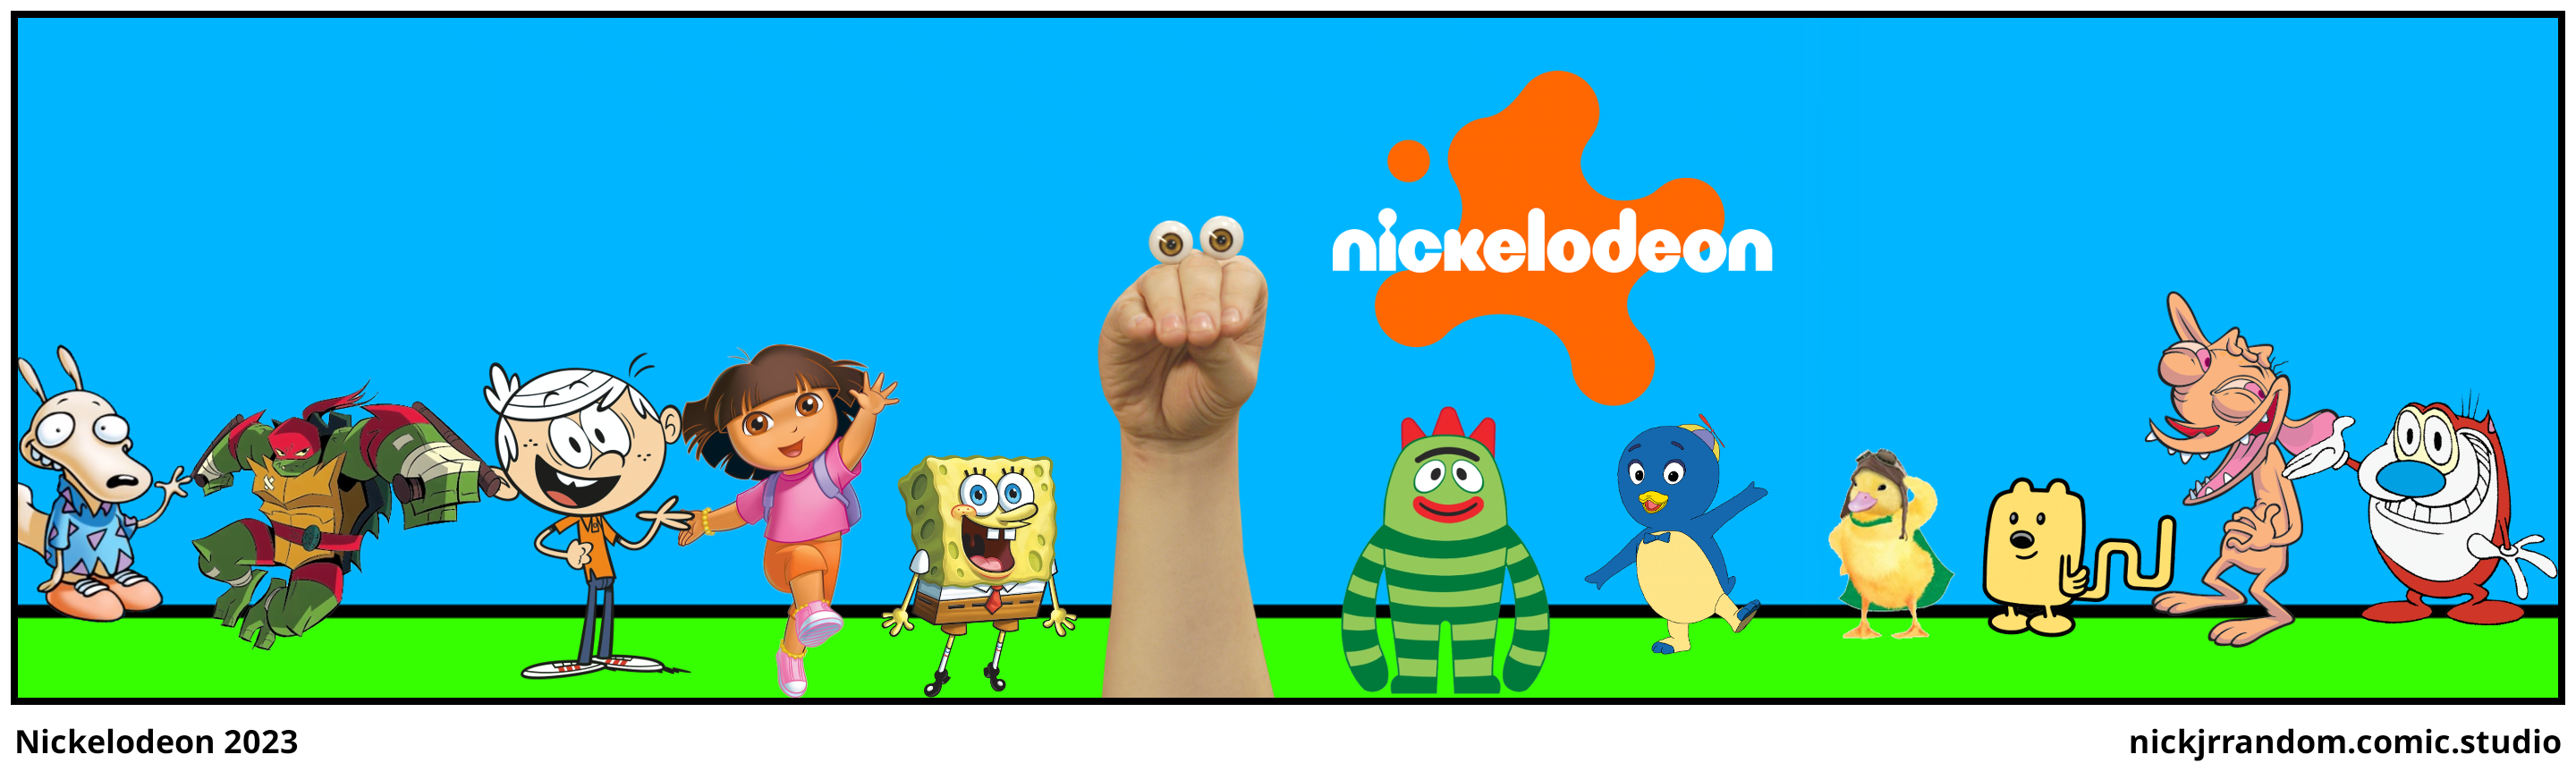 Nickelodeon 2023